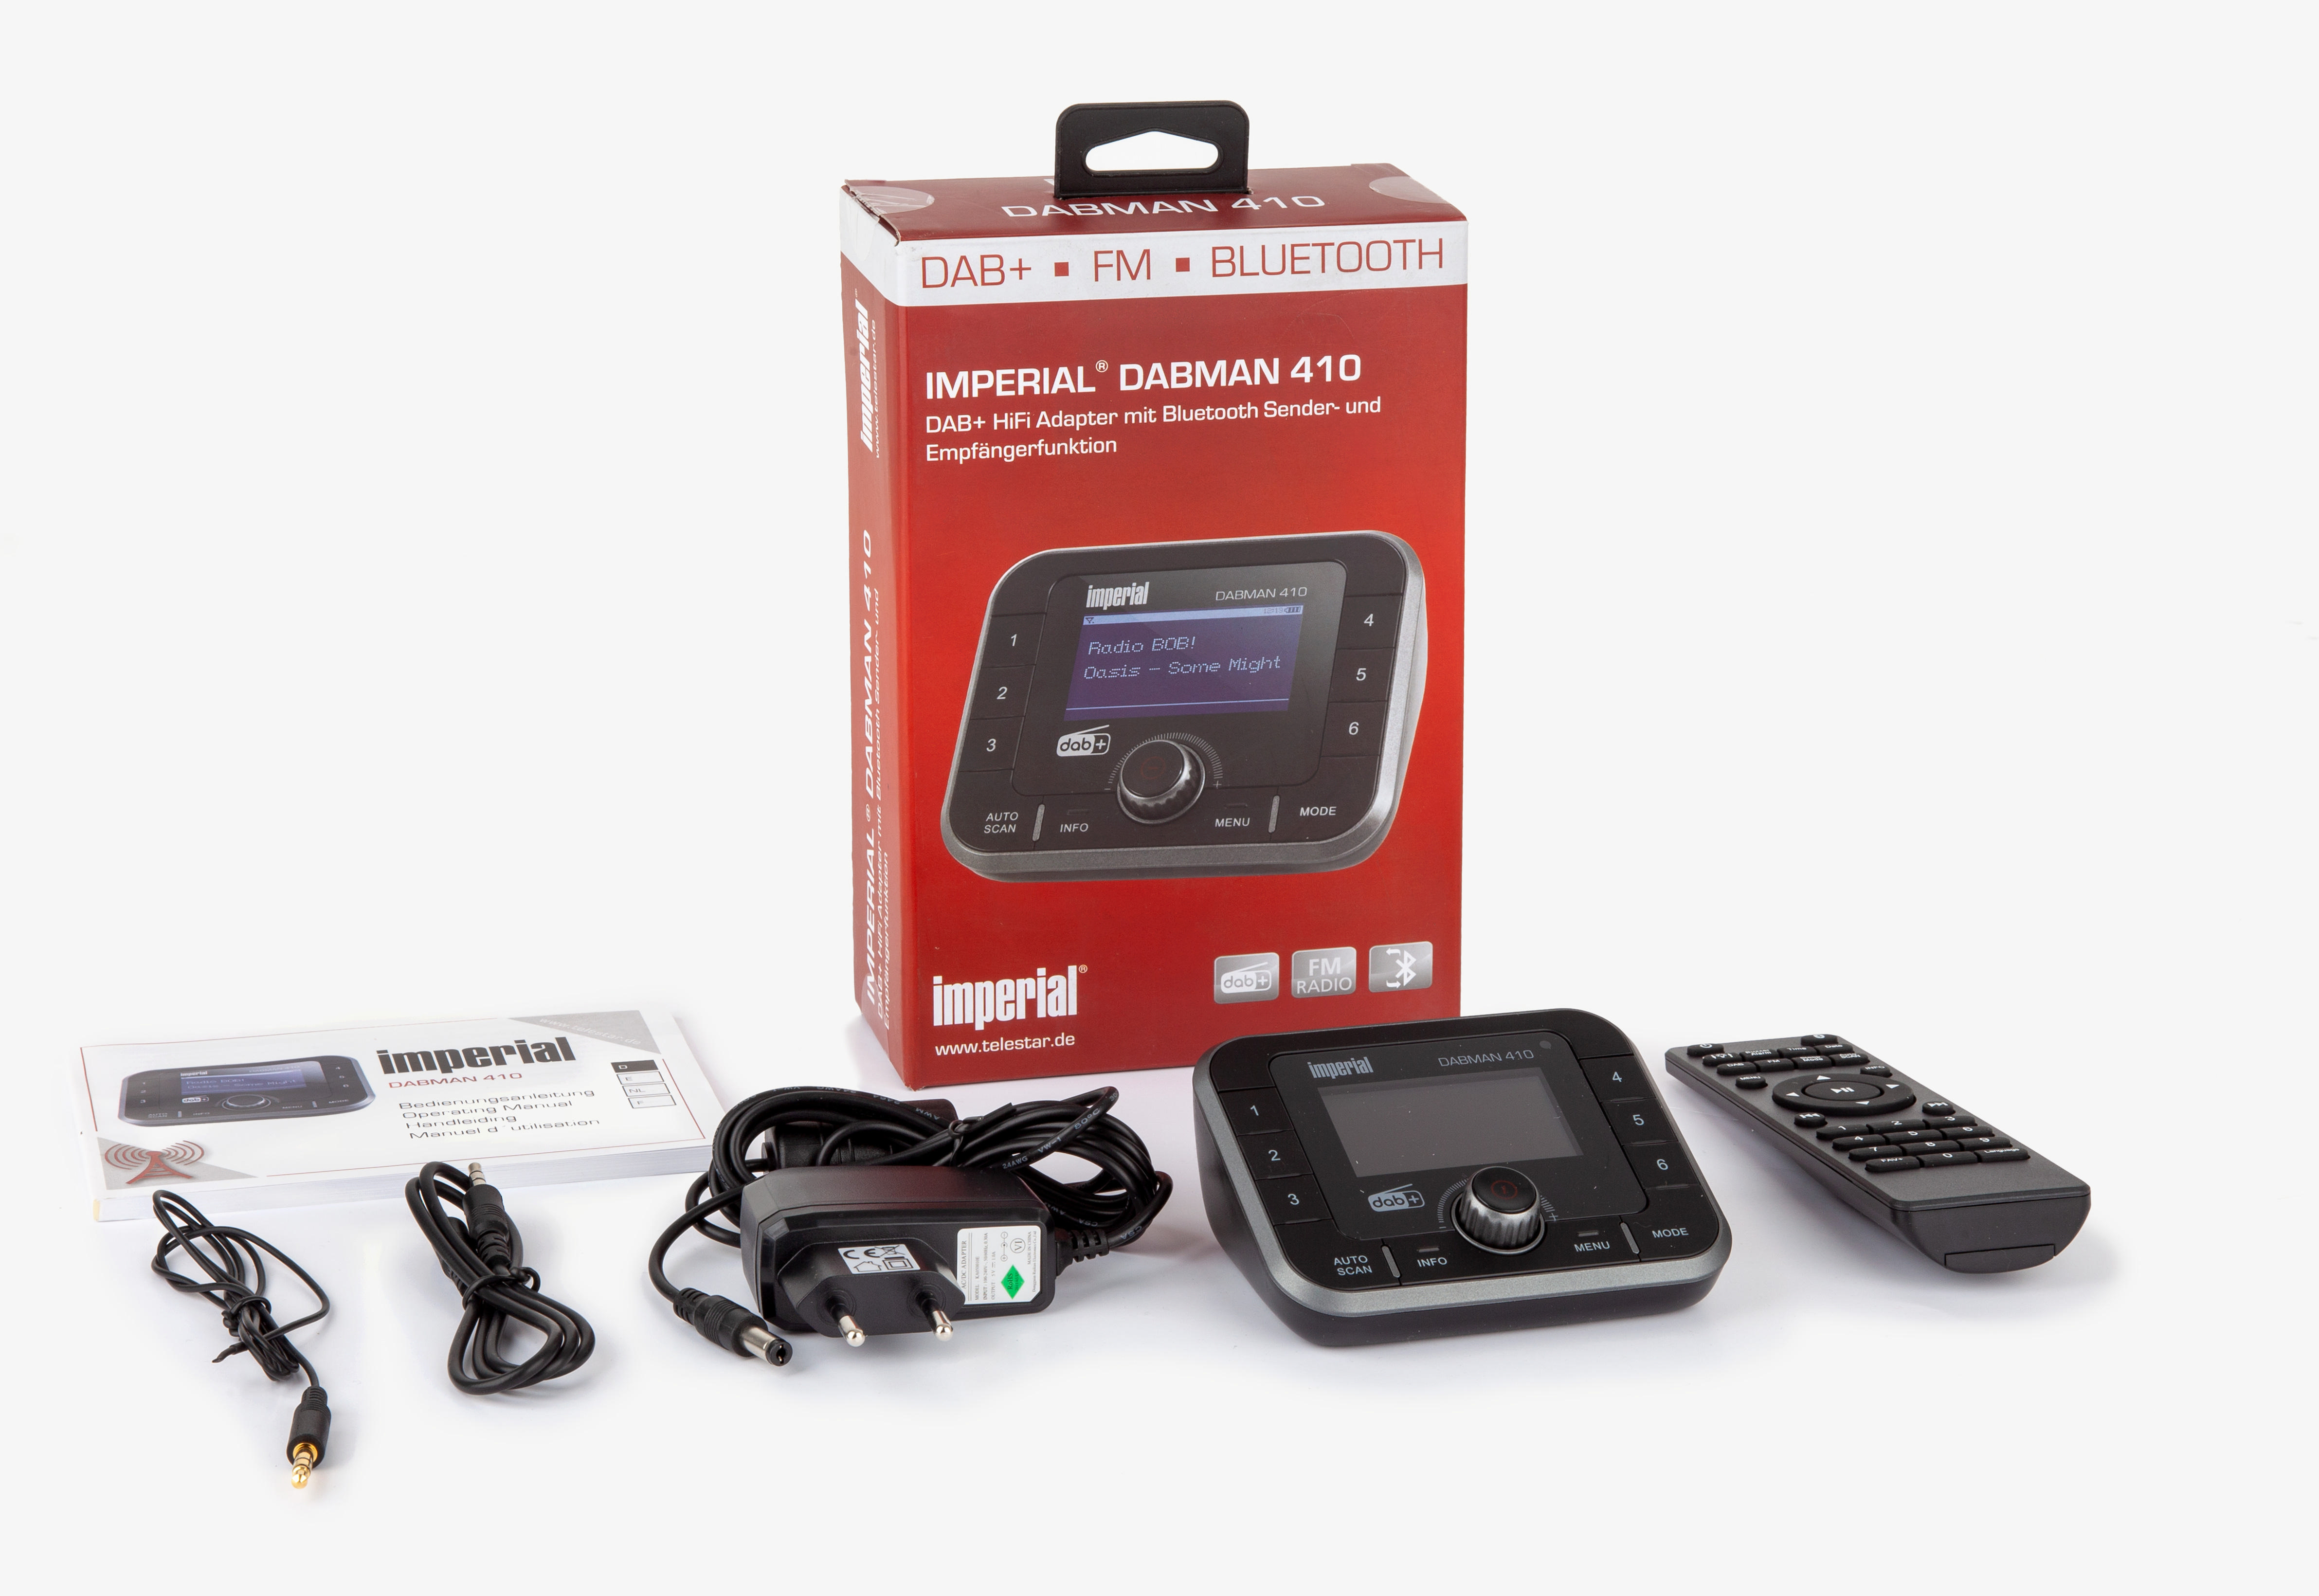 Digitalradio DAB+ / Schwarz Bluetooth, AM, 410 HiFi Adapter, FM, DAB+, IMPERIAL UKW, DAB+ DABMAN DAB,